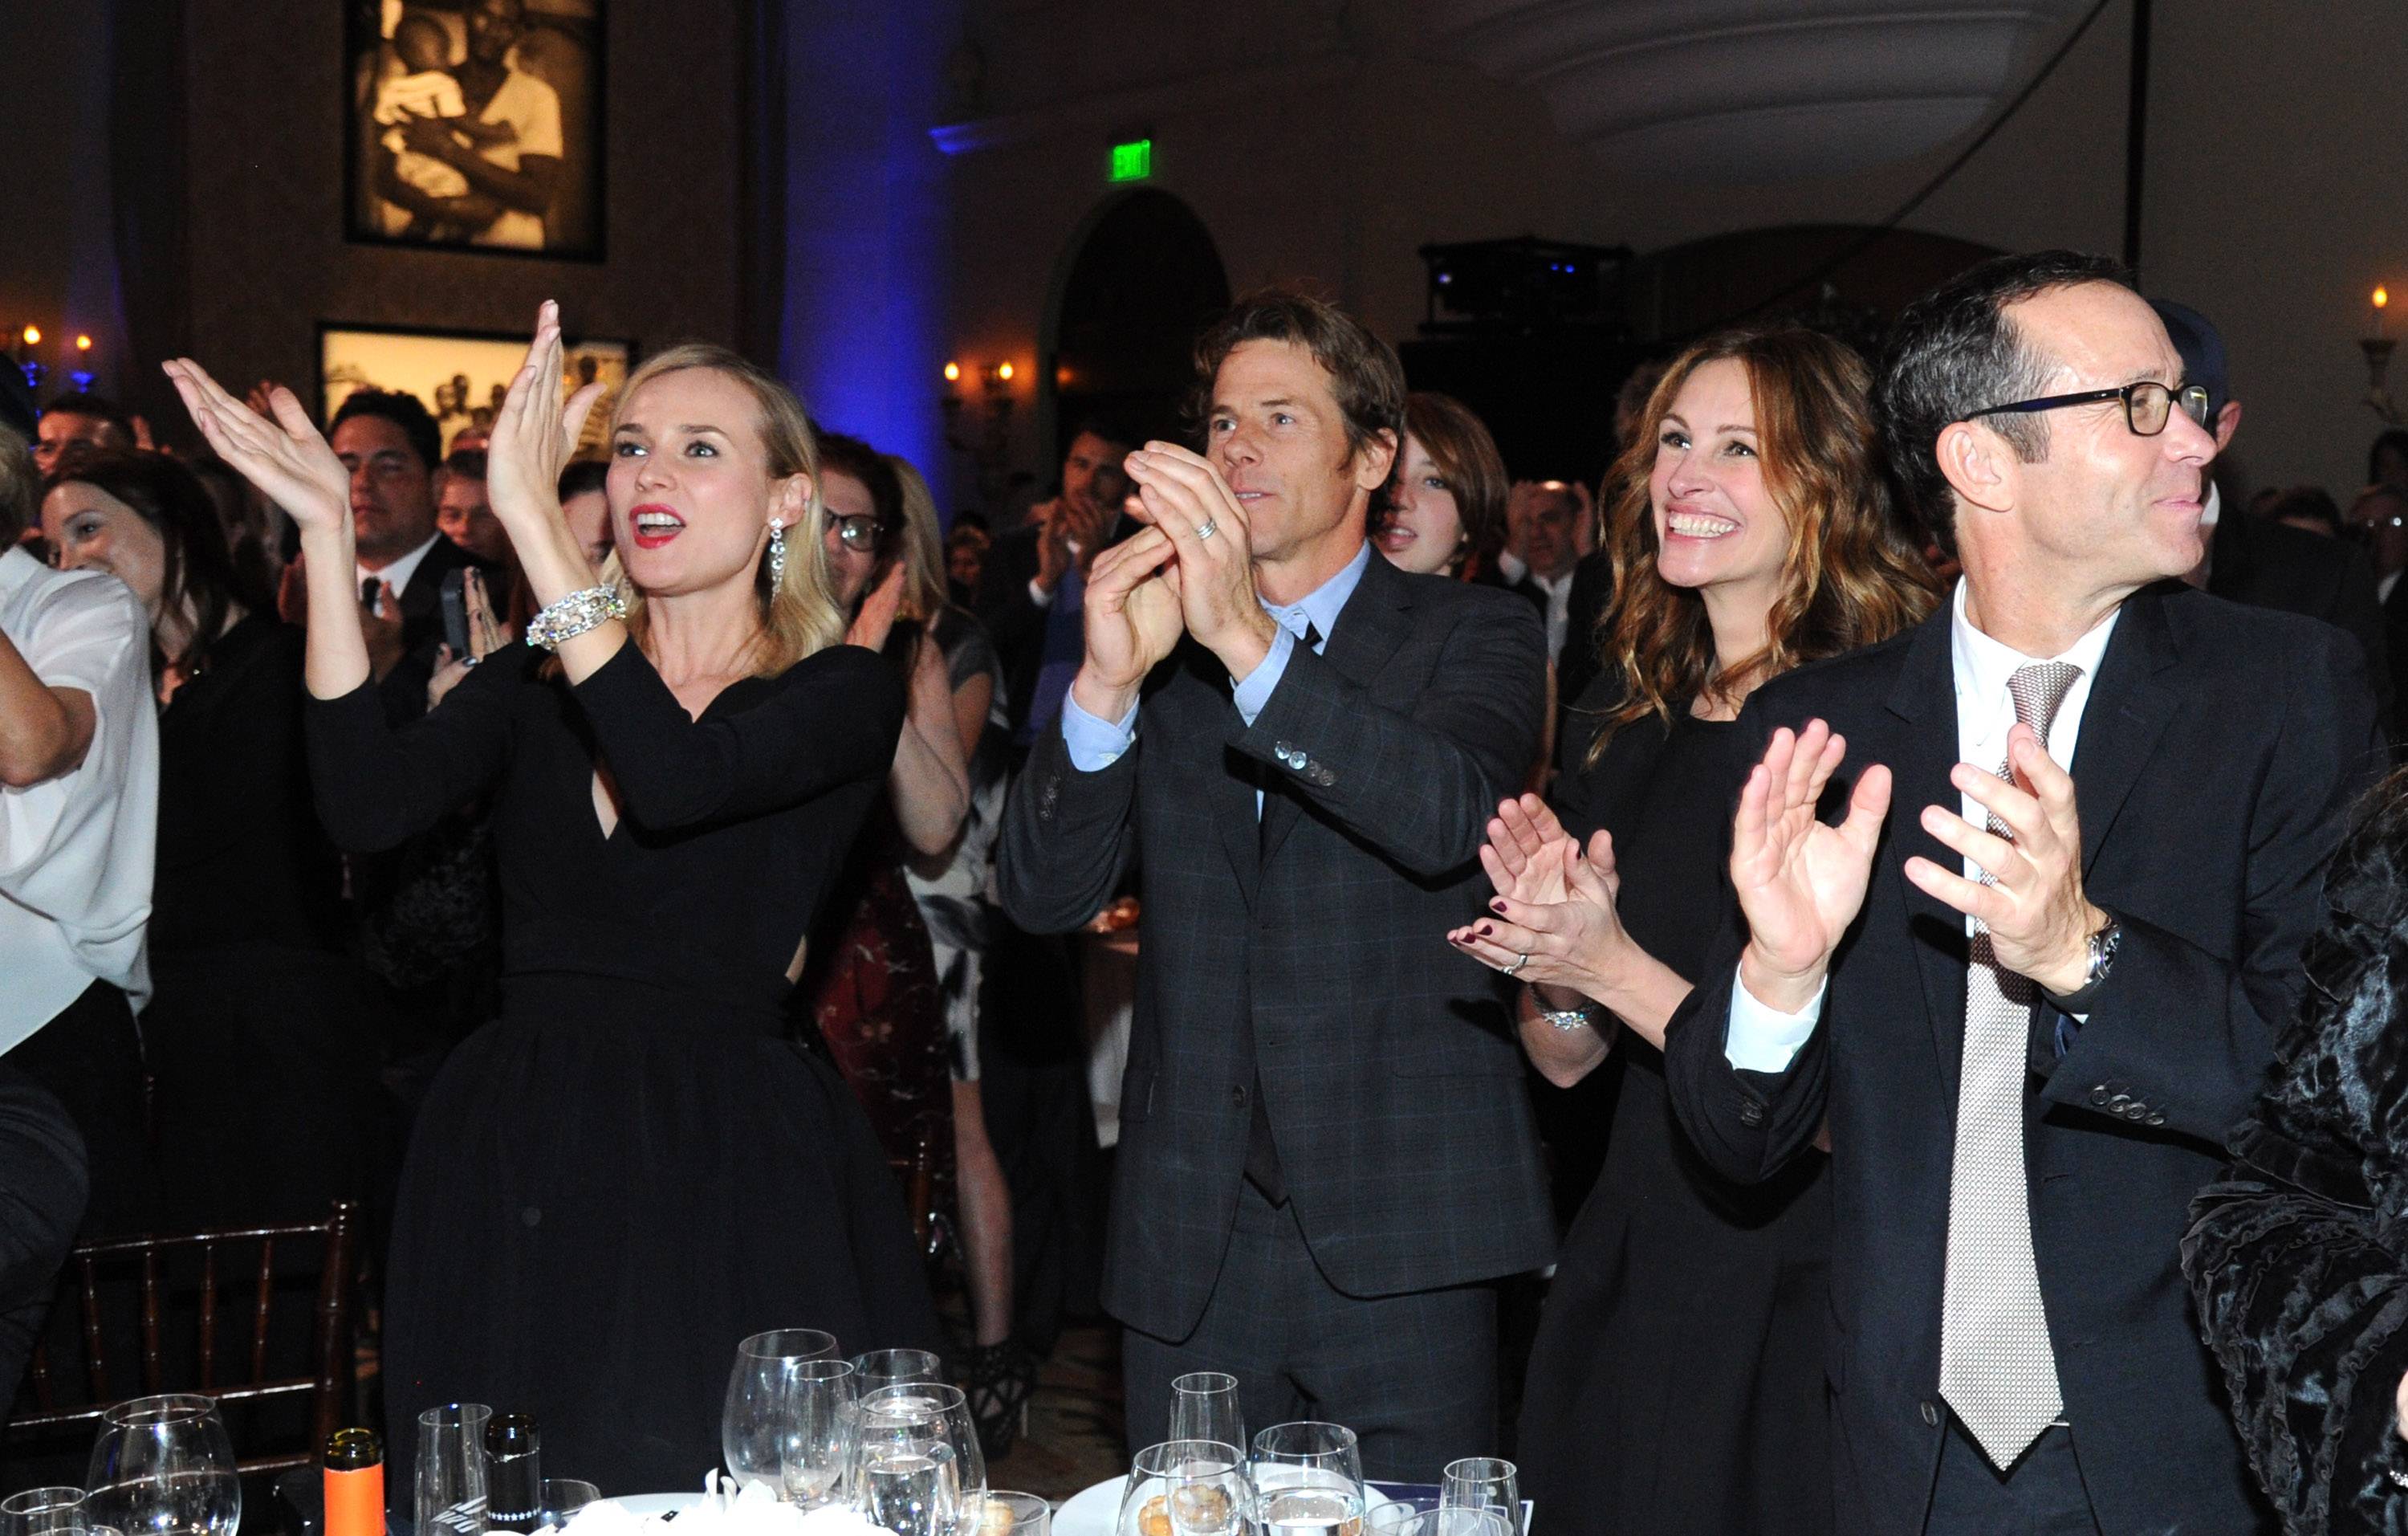 3rd Annual Sean Penn & Friends HELP HAITI HOME Gala Benefiting J/P HRO Presented By Giorgio Armani - Inside